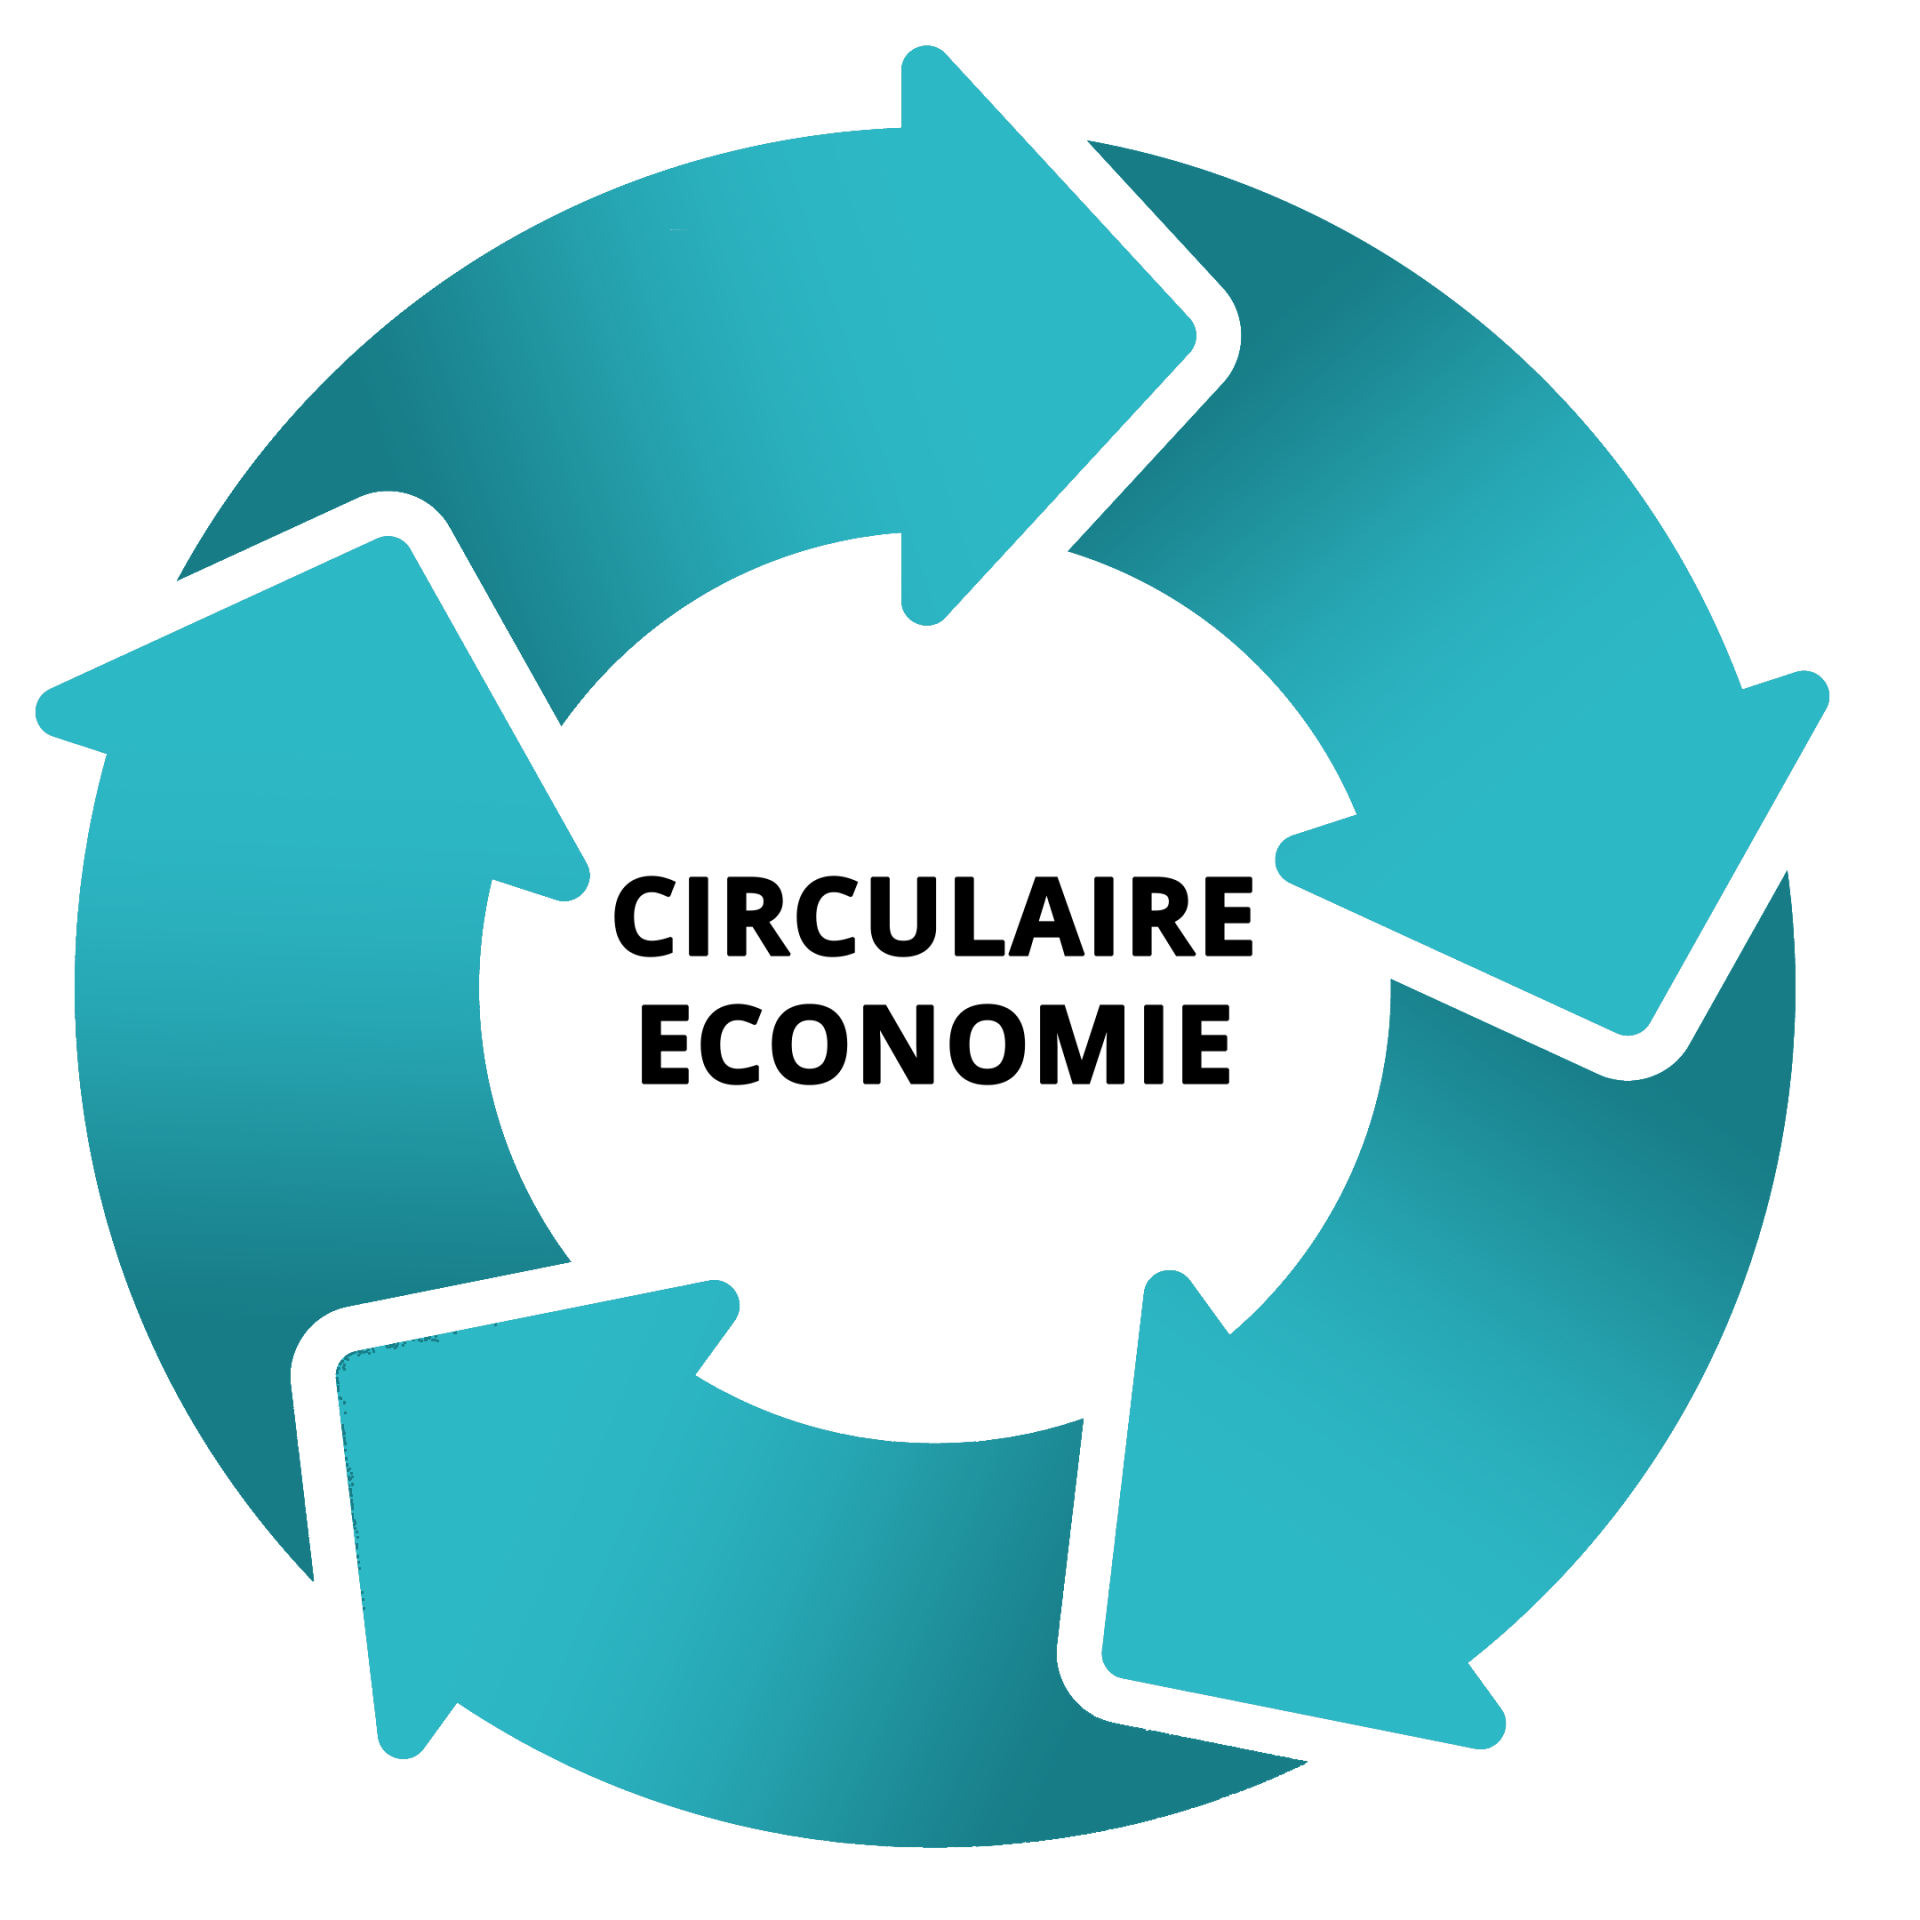  Circulaire economie 